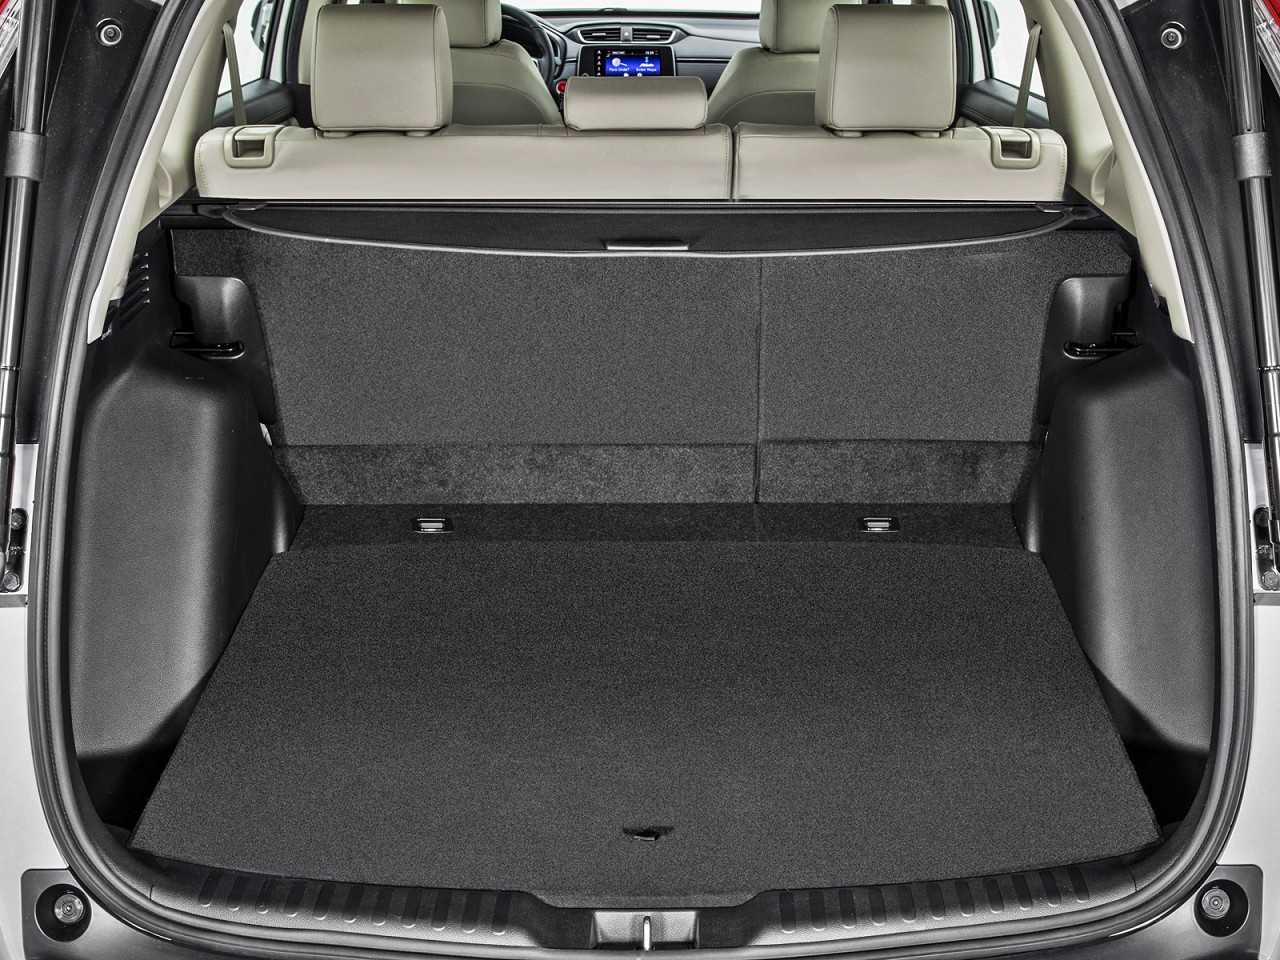 HondaCR-V 2018 - porta-malas